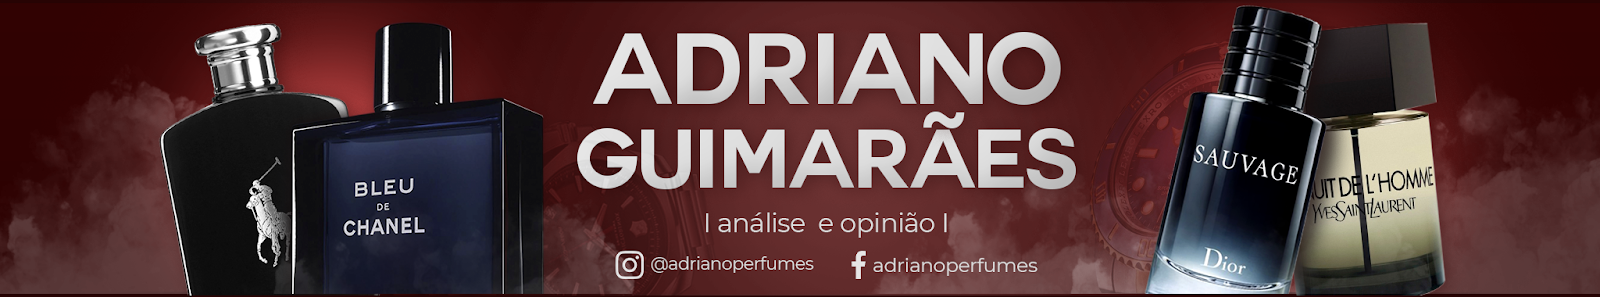 ADRIANO GUIMARÃES